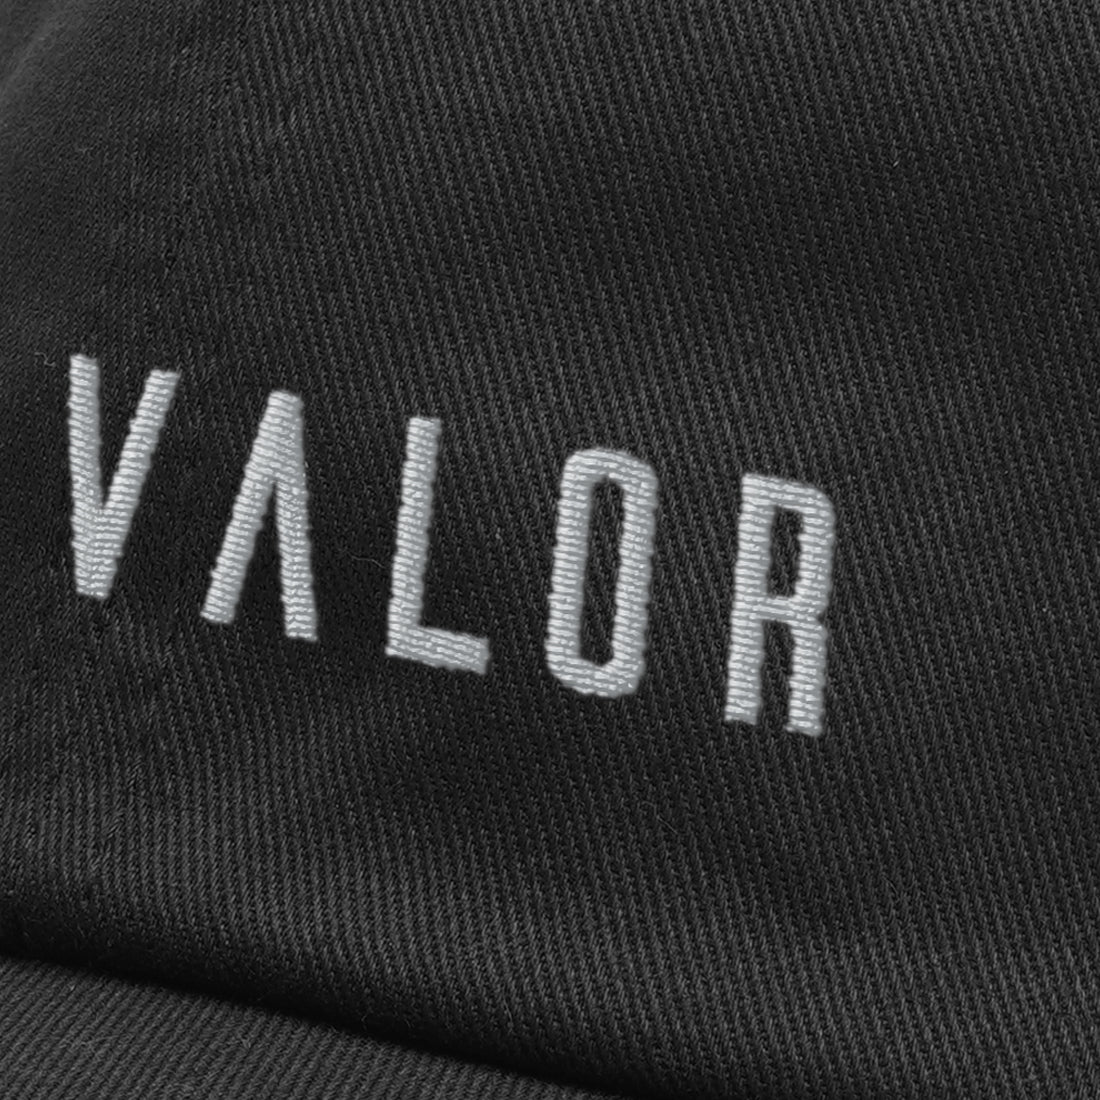 Valor Classic Fit Logo Cap